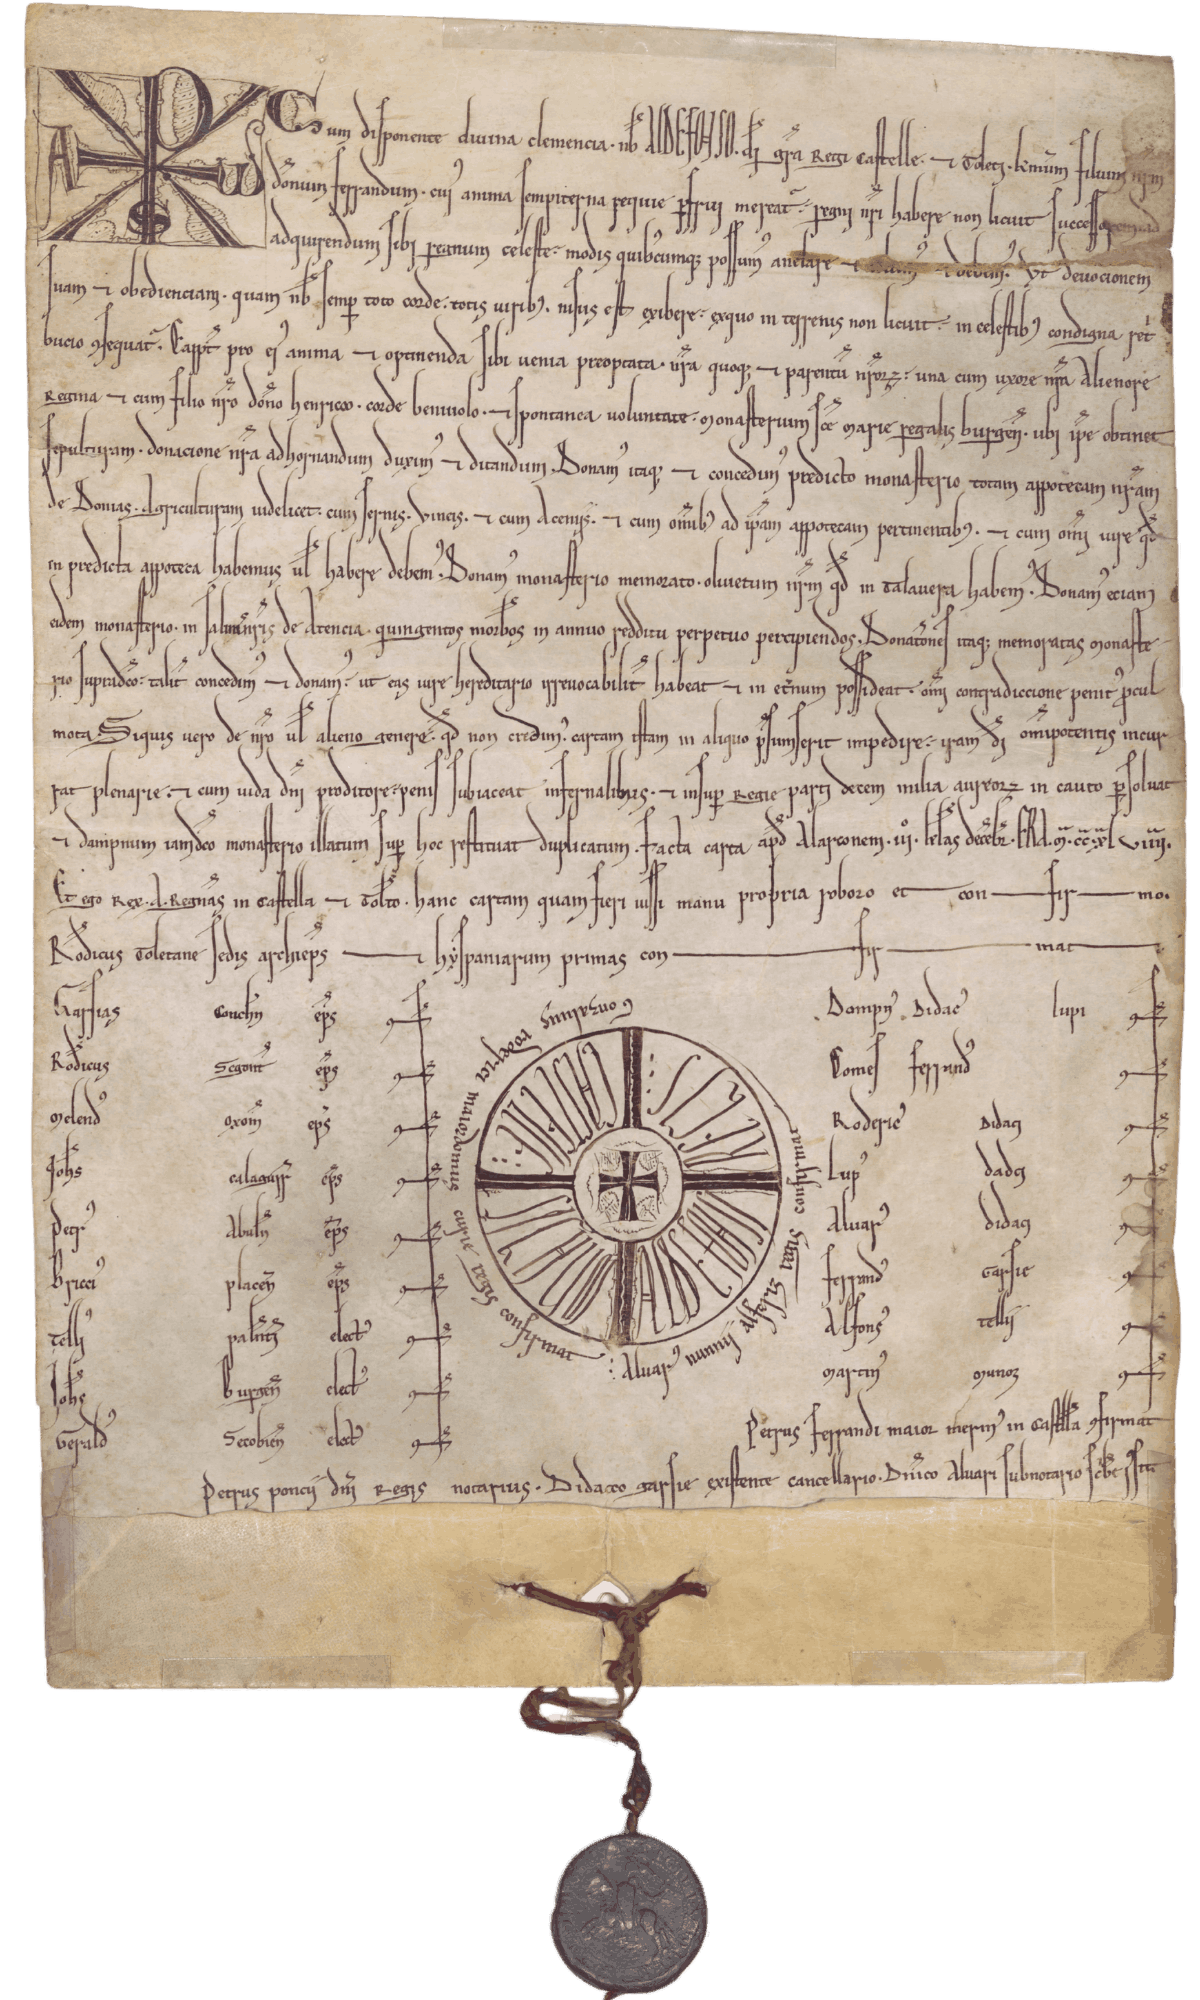 Privilegio rodato di Alfonso VIII. Archivio Ducale di Medinaceli, Privilegi Rodados, nº6.